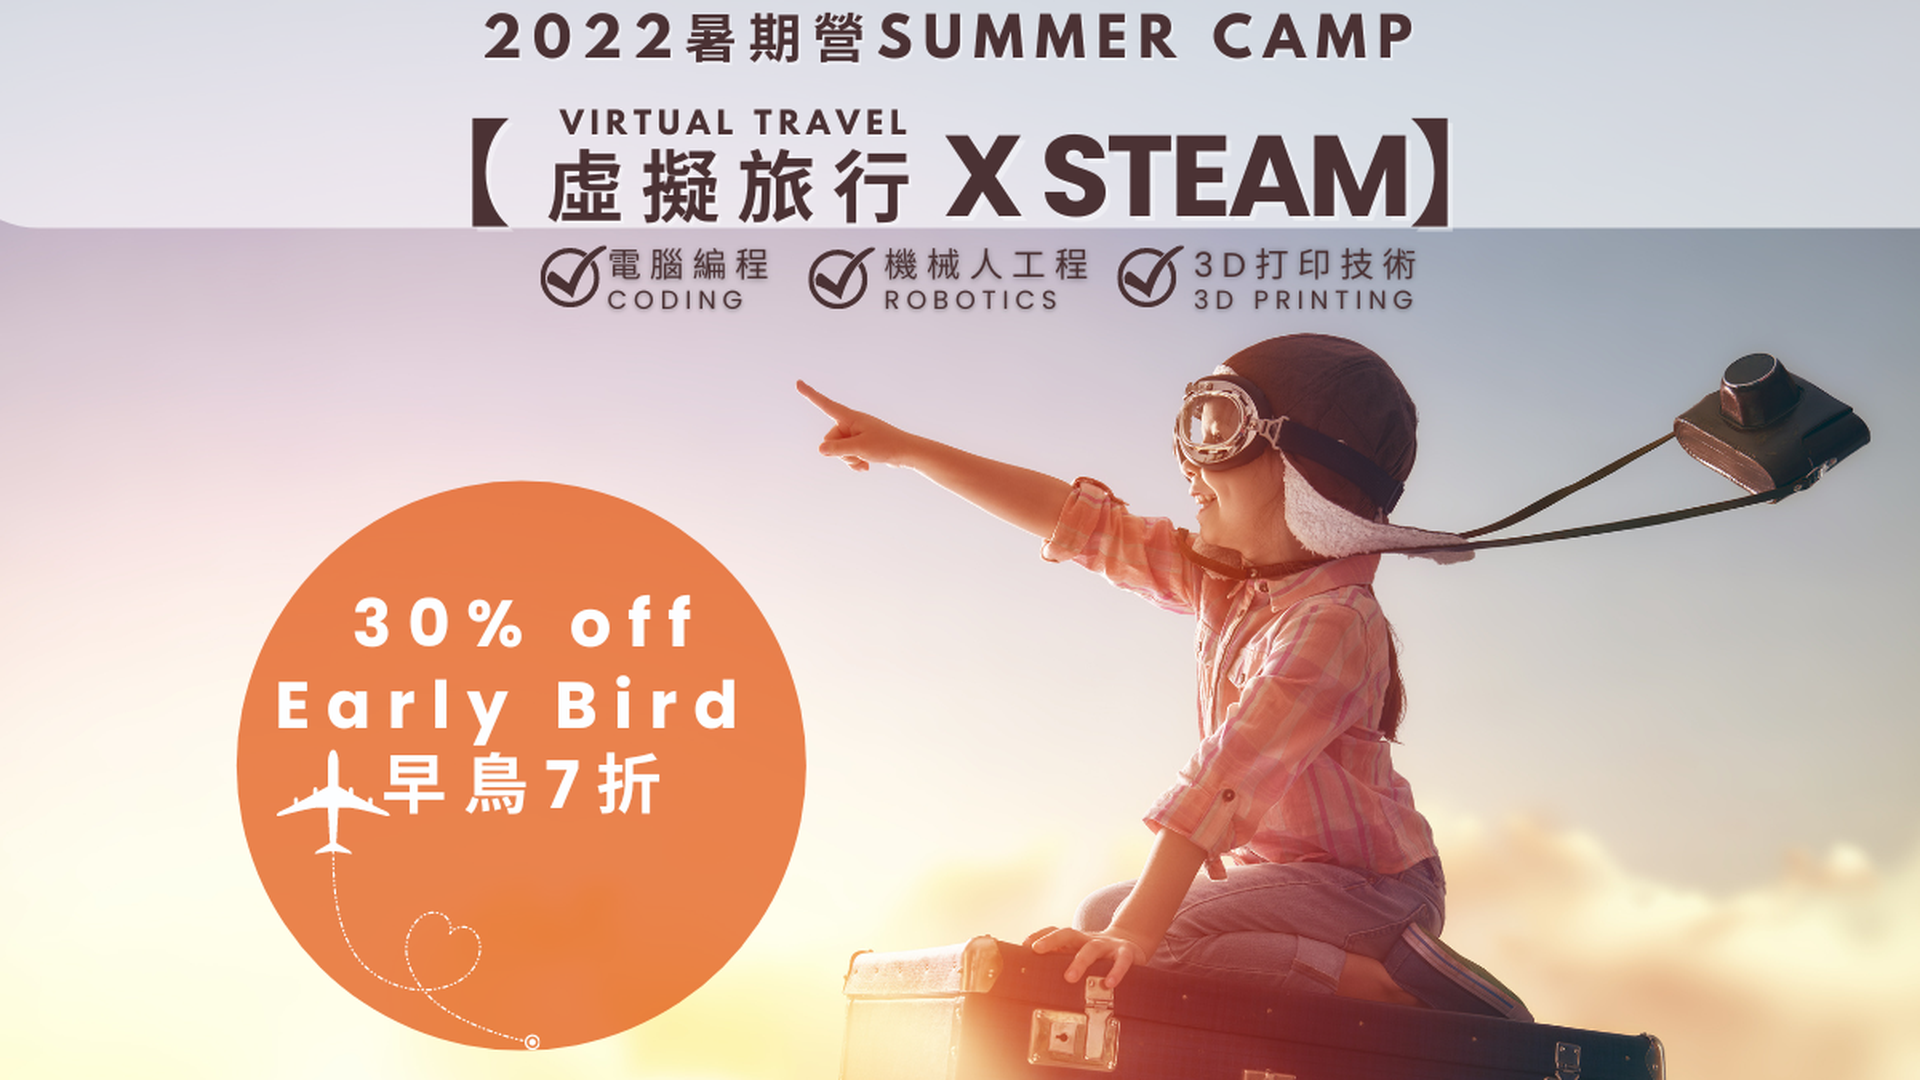 虛擬旅行 X STEAM暑期營